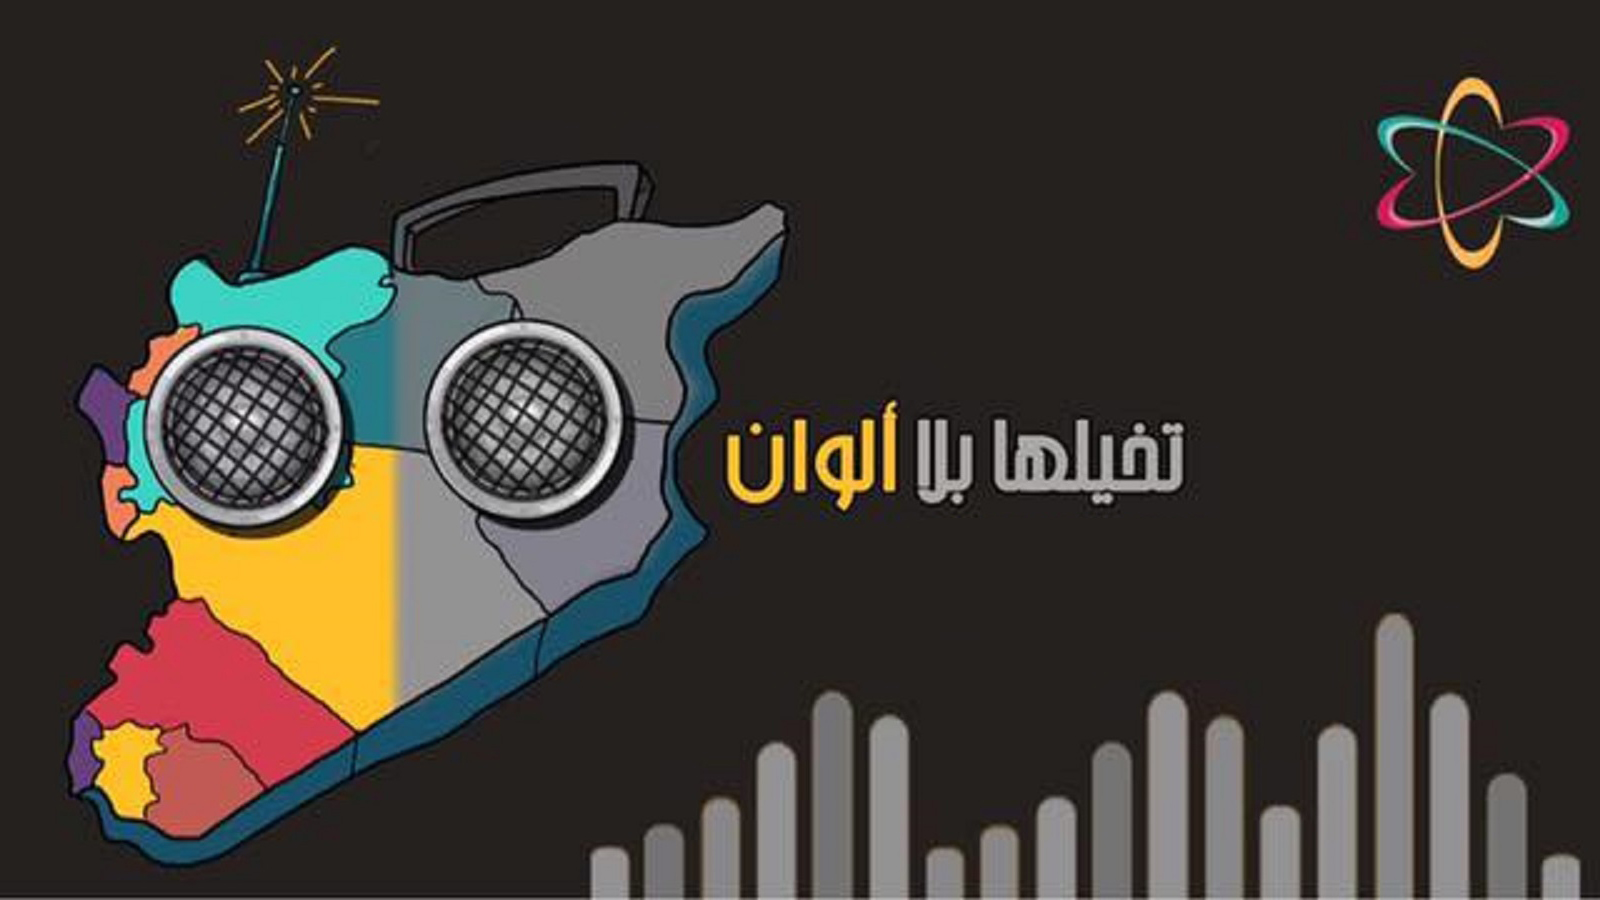 كيف ساهم تمدد "النصرة" في تمويل راديو "ألوان"؟!